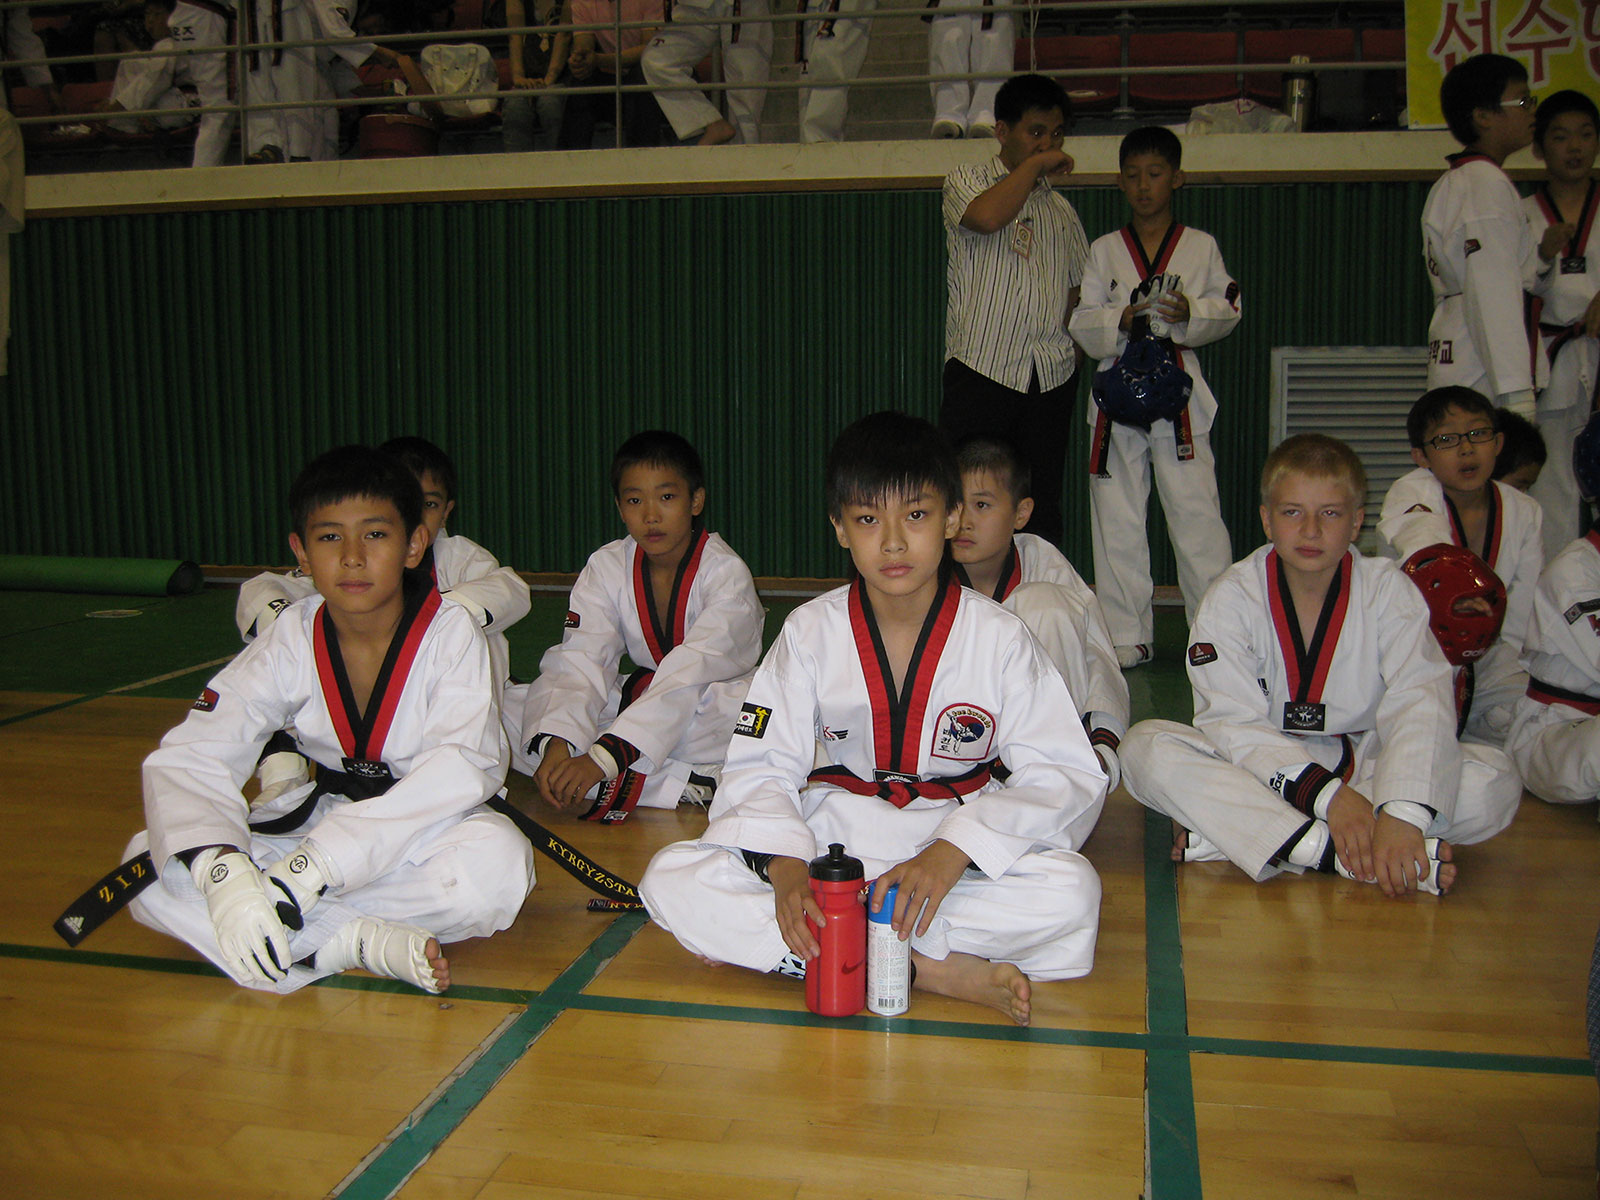 Taekwondo Tournament. Taekwondo Tournament Design in Korea. Тхэквондо международная